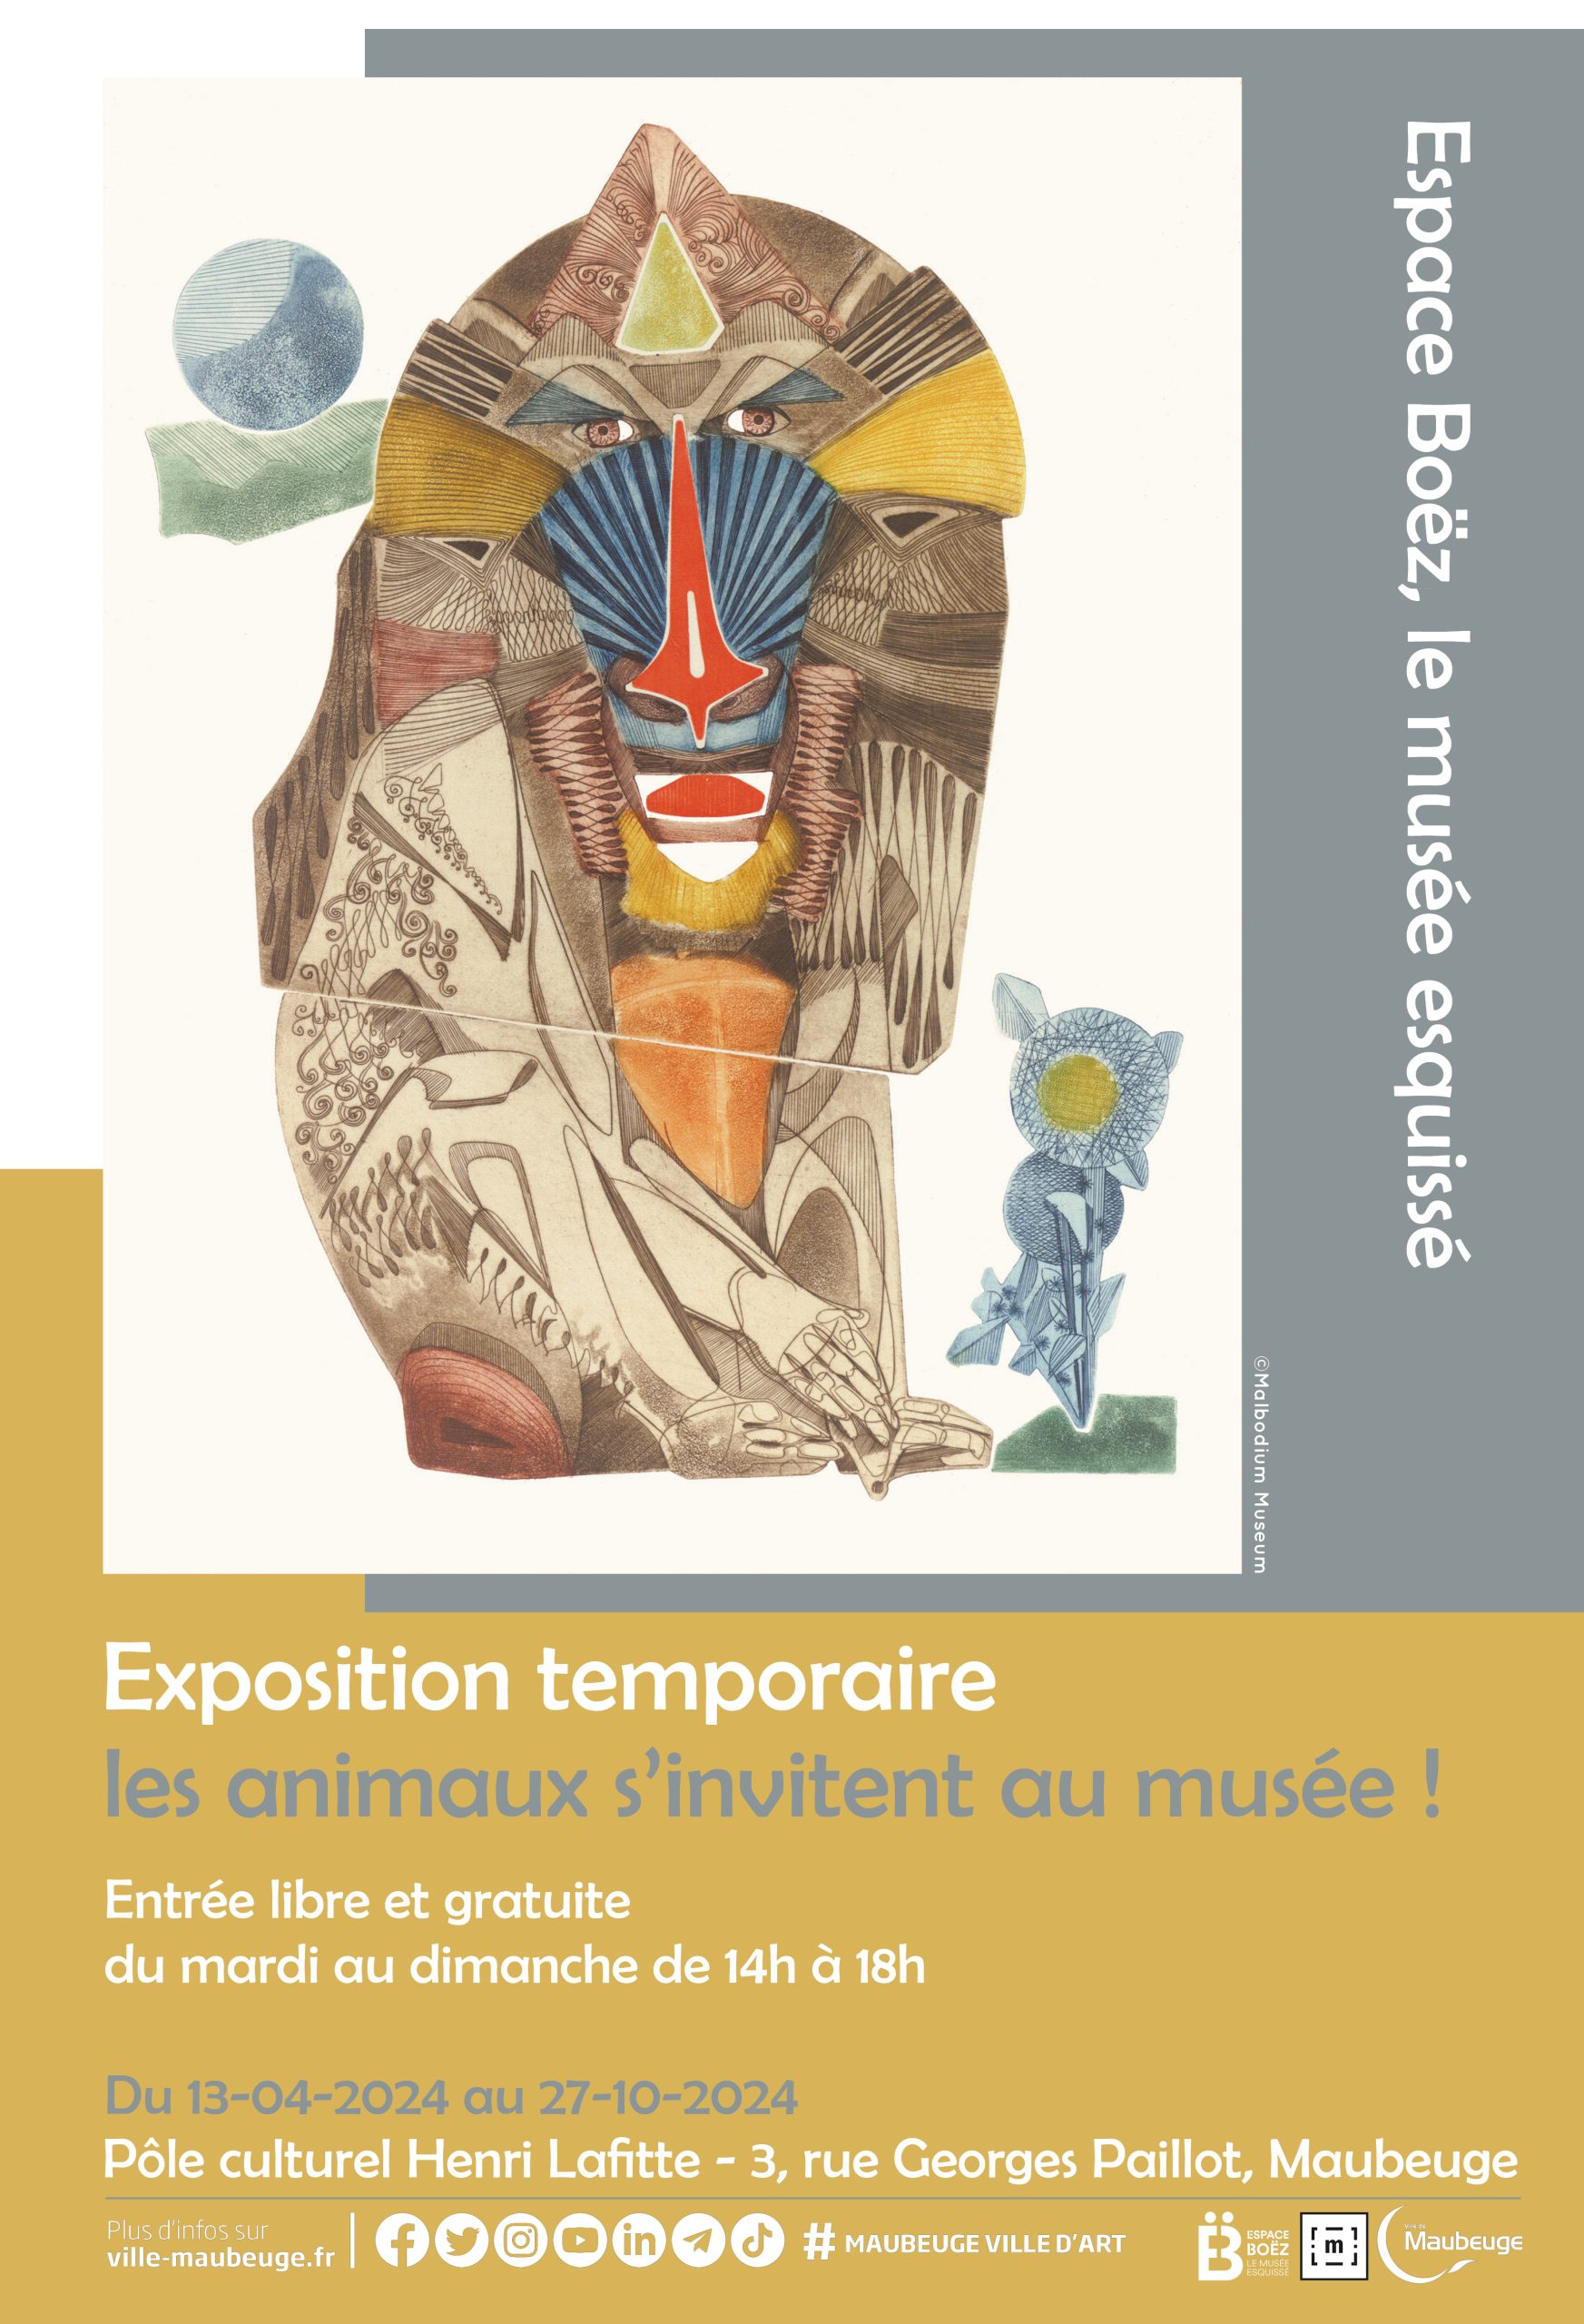 Exposition temporaire - "Les animaux s'invitent au musée !"